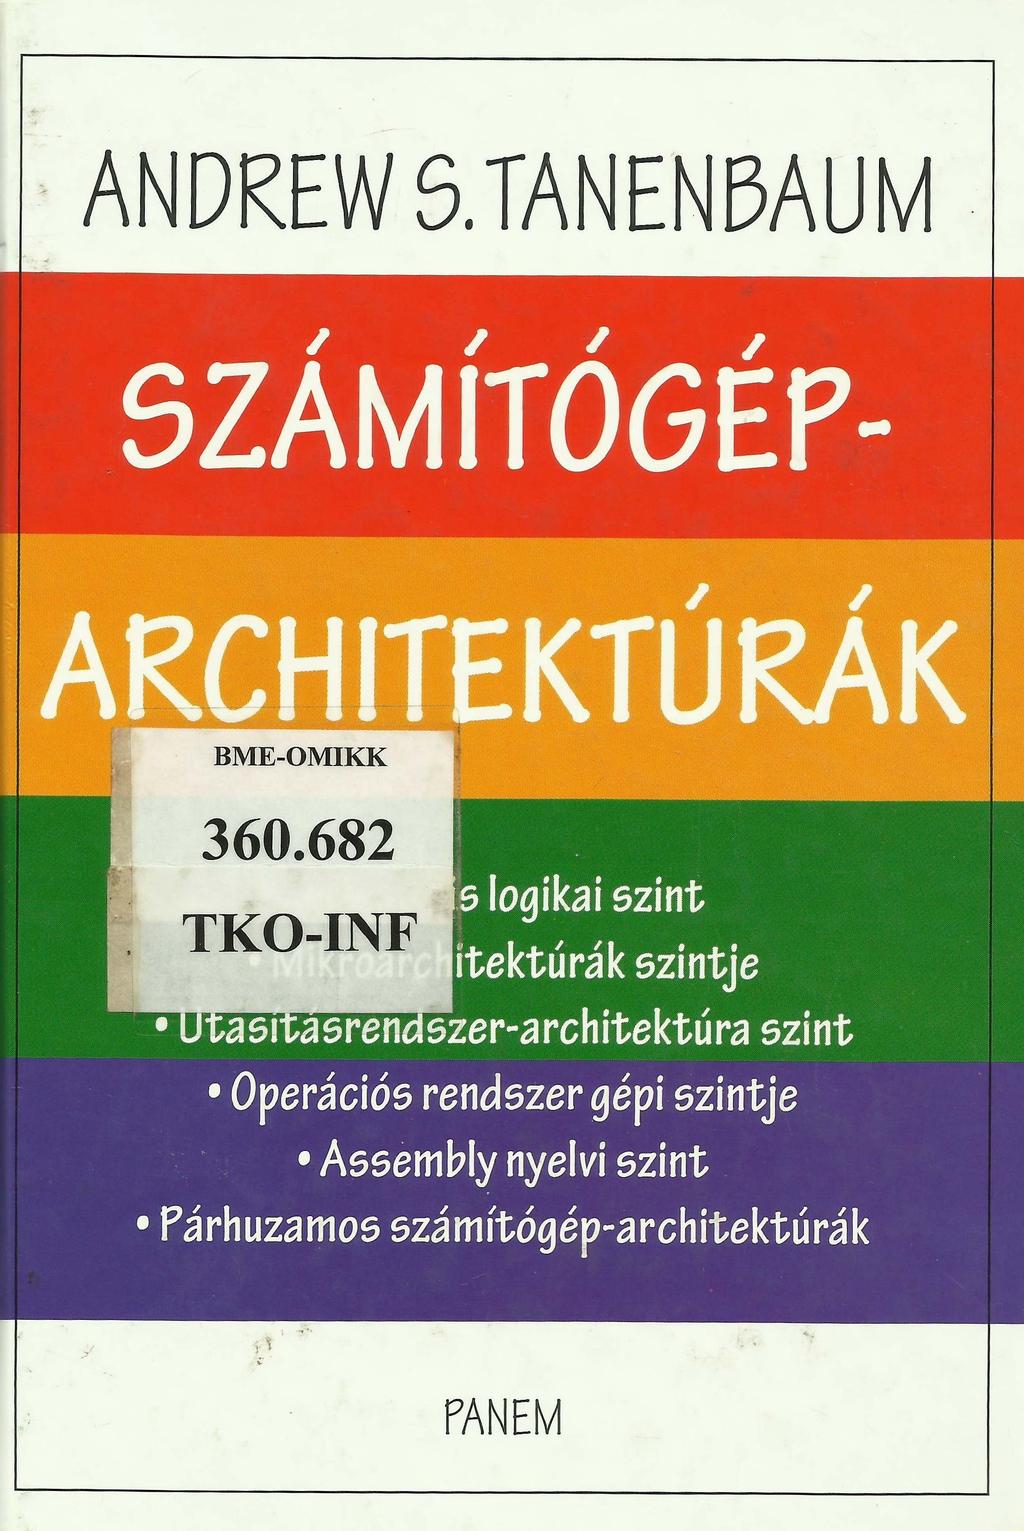 Tankönyvek példái Andrew S. Tanenbaum, Számítógép-Architektúrák, Panem Könyvkiadó Kft, 2001. 442.